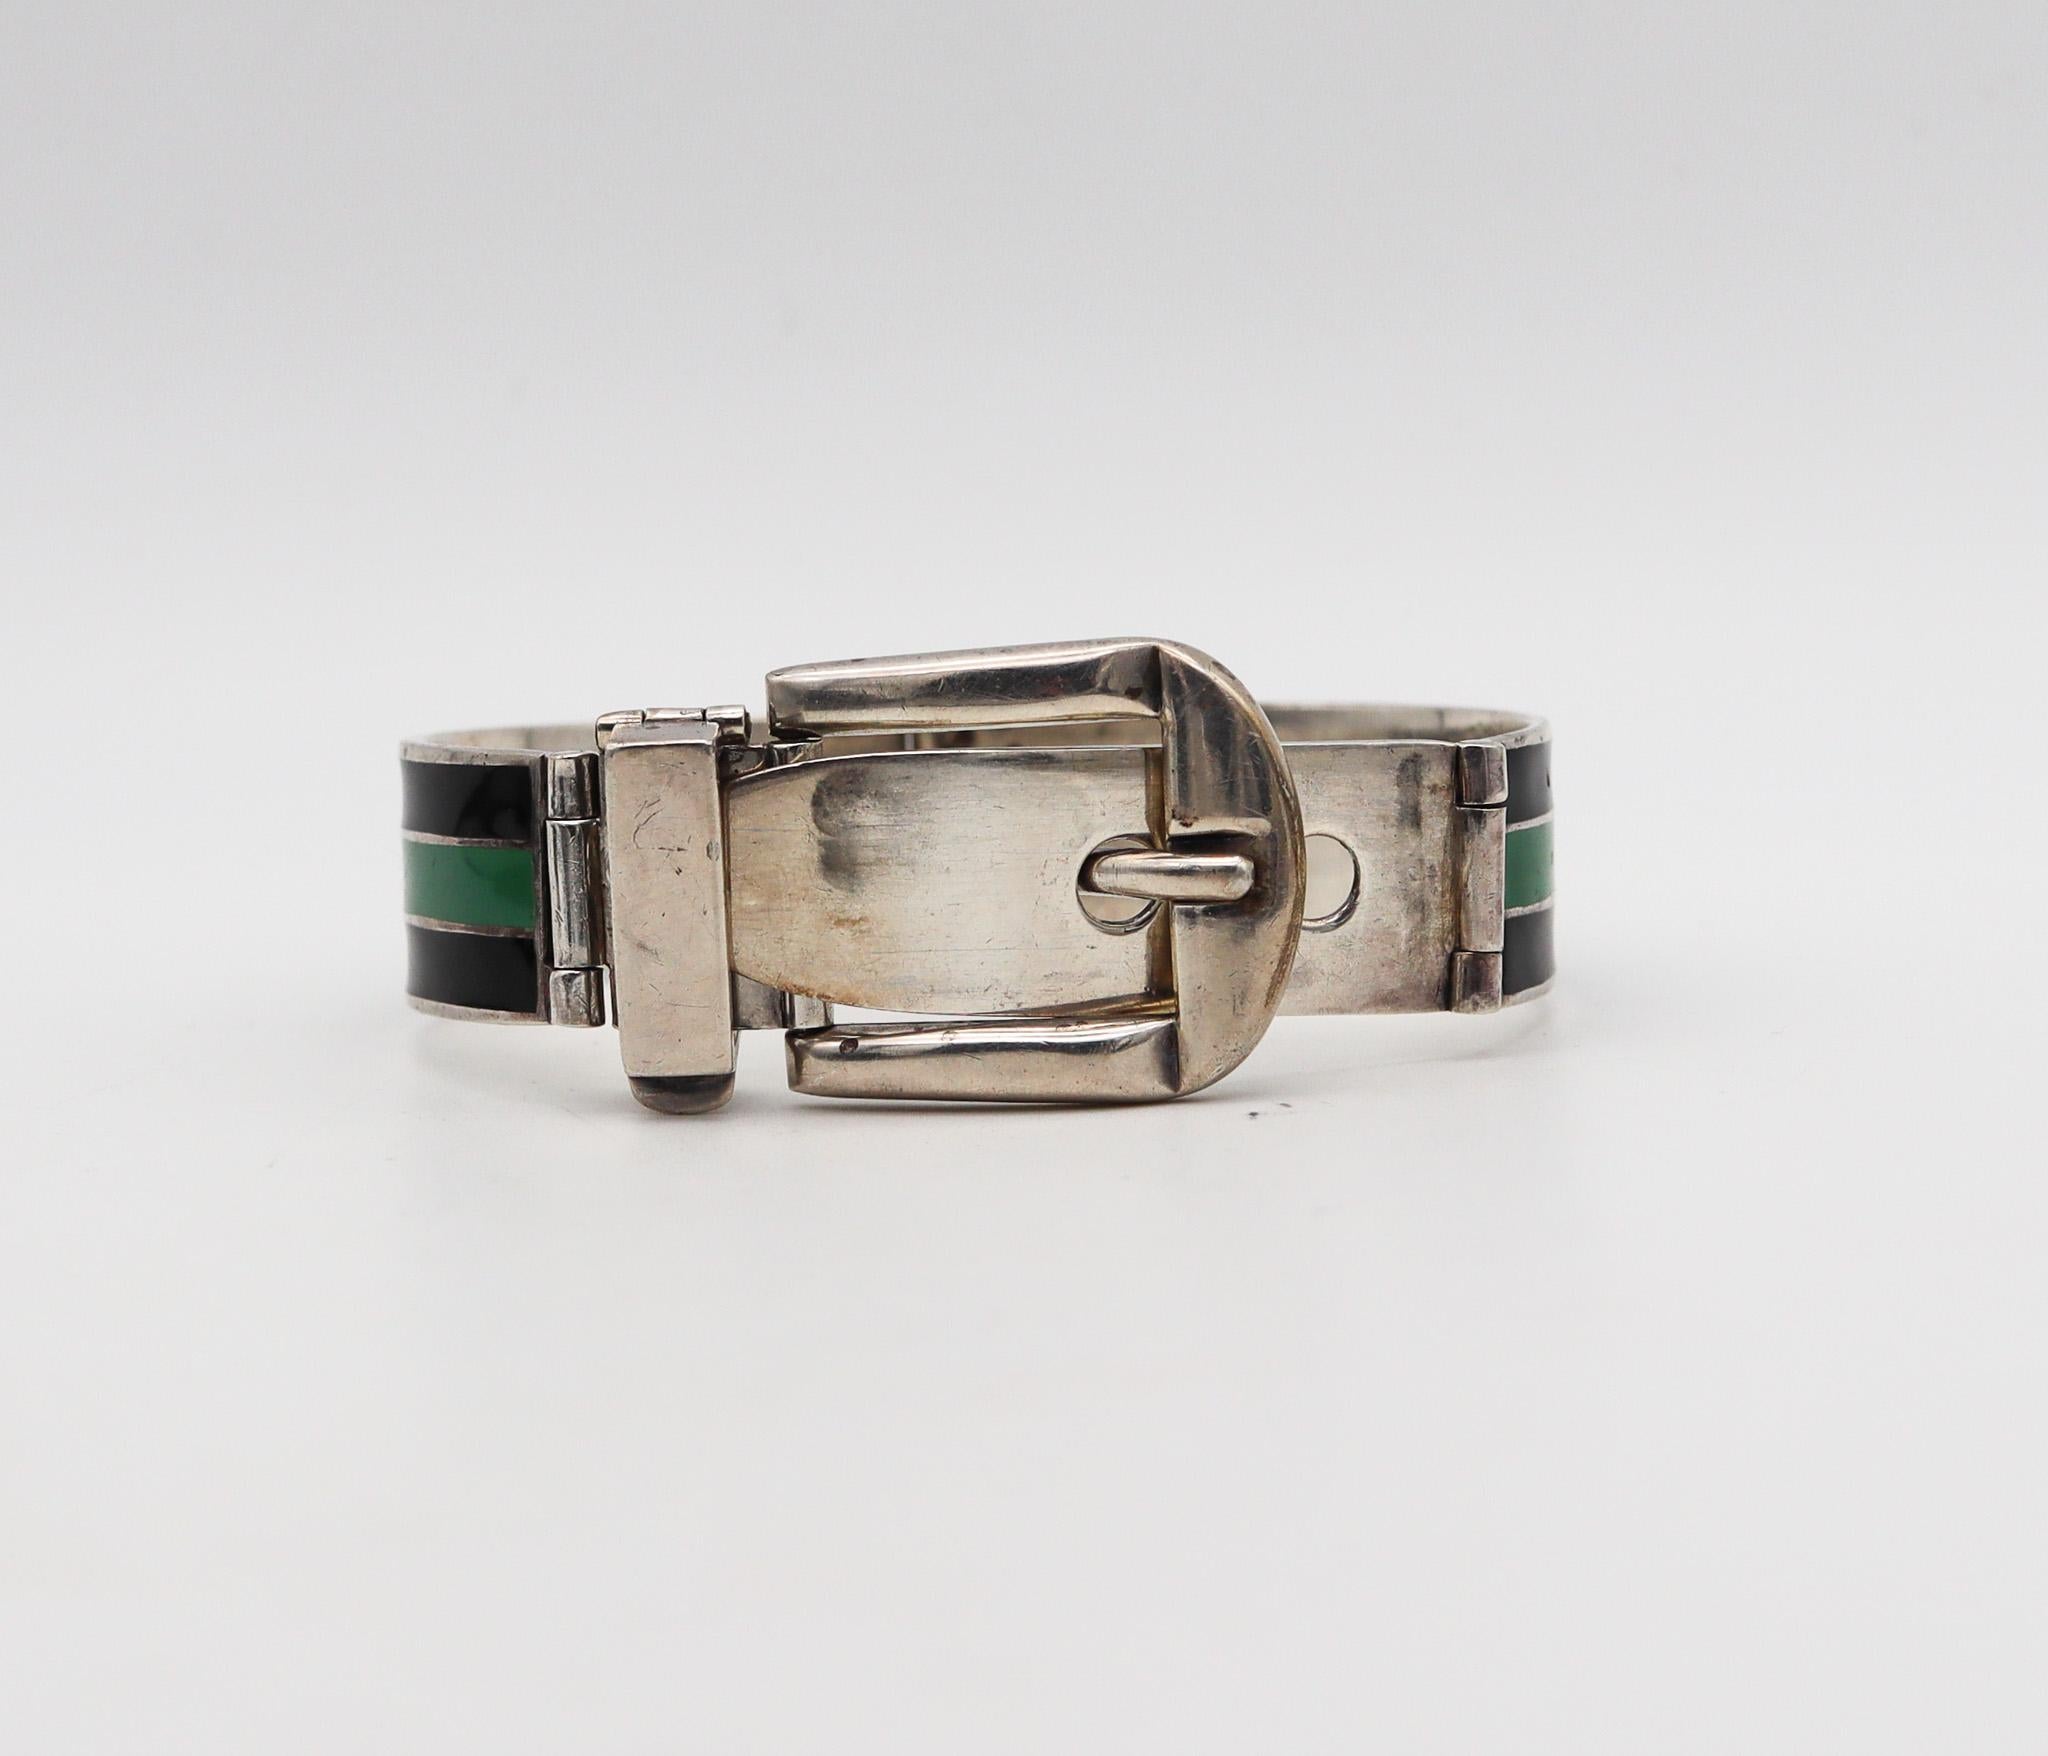 Bracelet à boucle émaillée conçu par Gucci.

Rare bracelet à boucle vintage, créé en Italie par la maison de couture Gucci dans les années 1970. Ce bracelet emblématique a été fabriqué en forme de boucle en argent massif .925/.999 et est orné